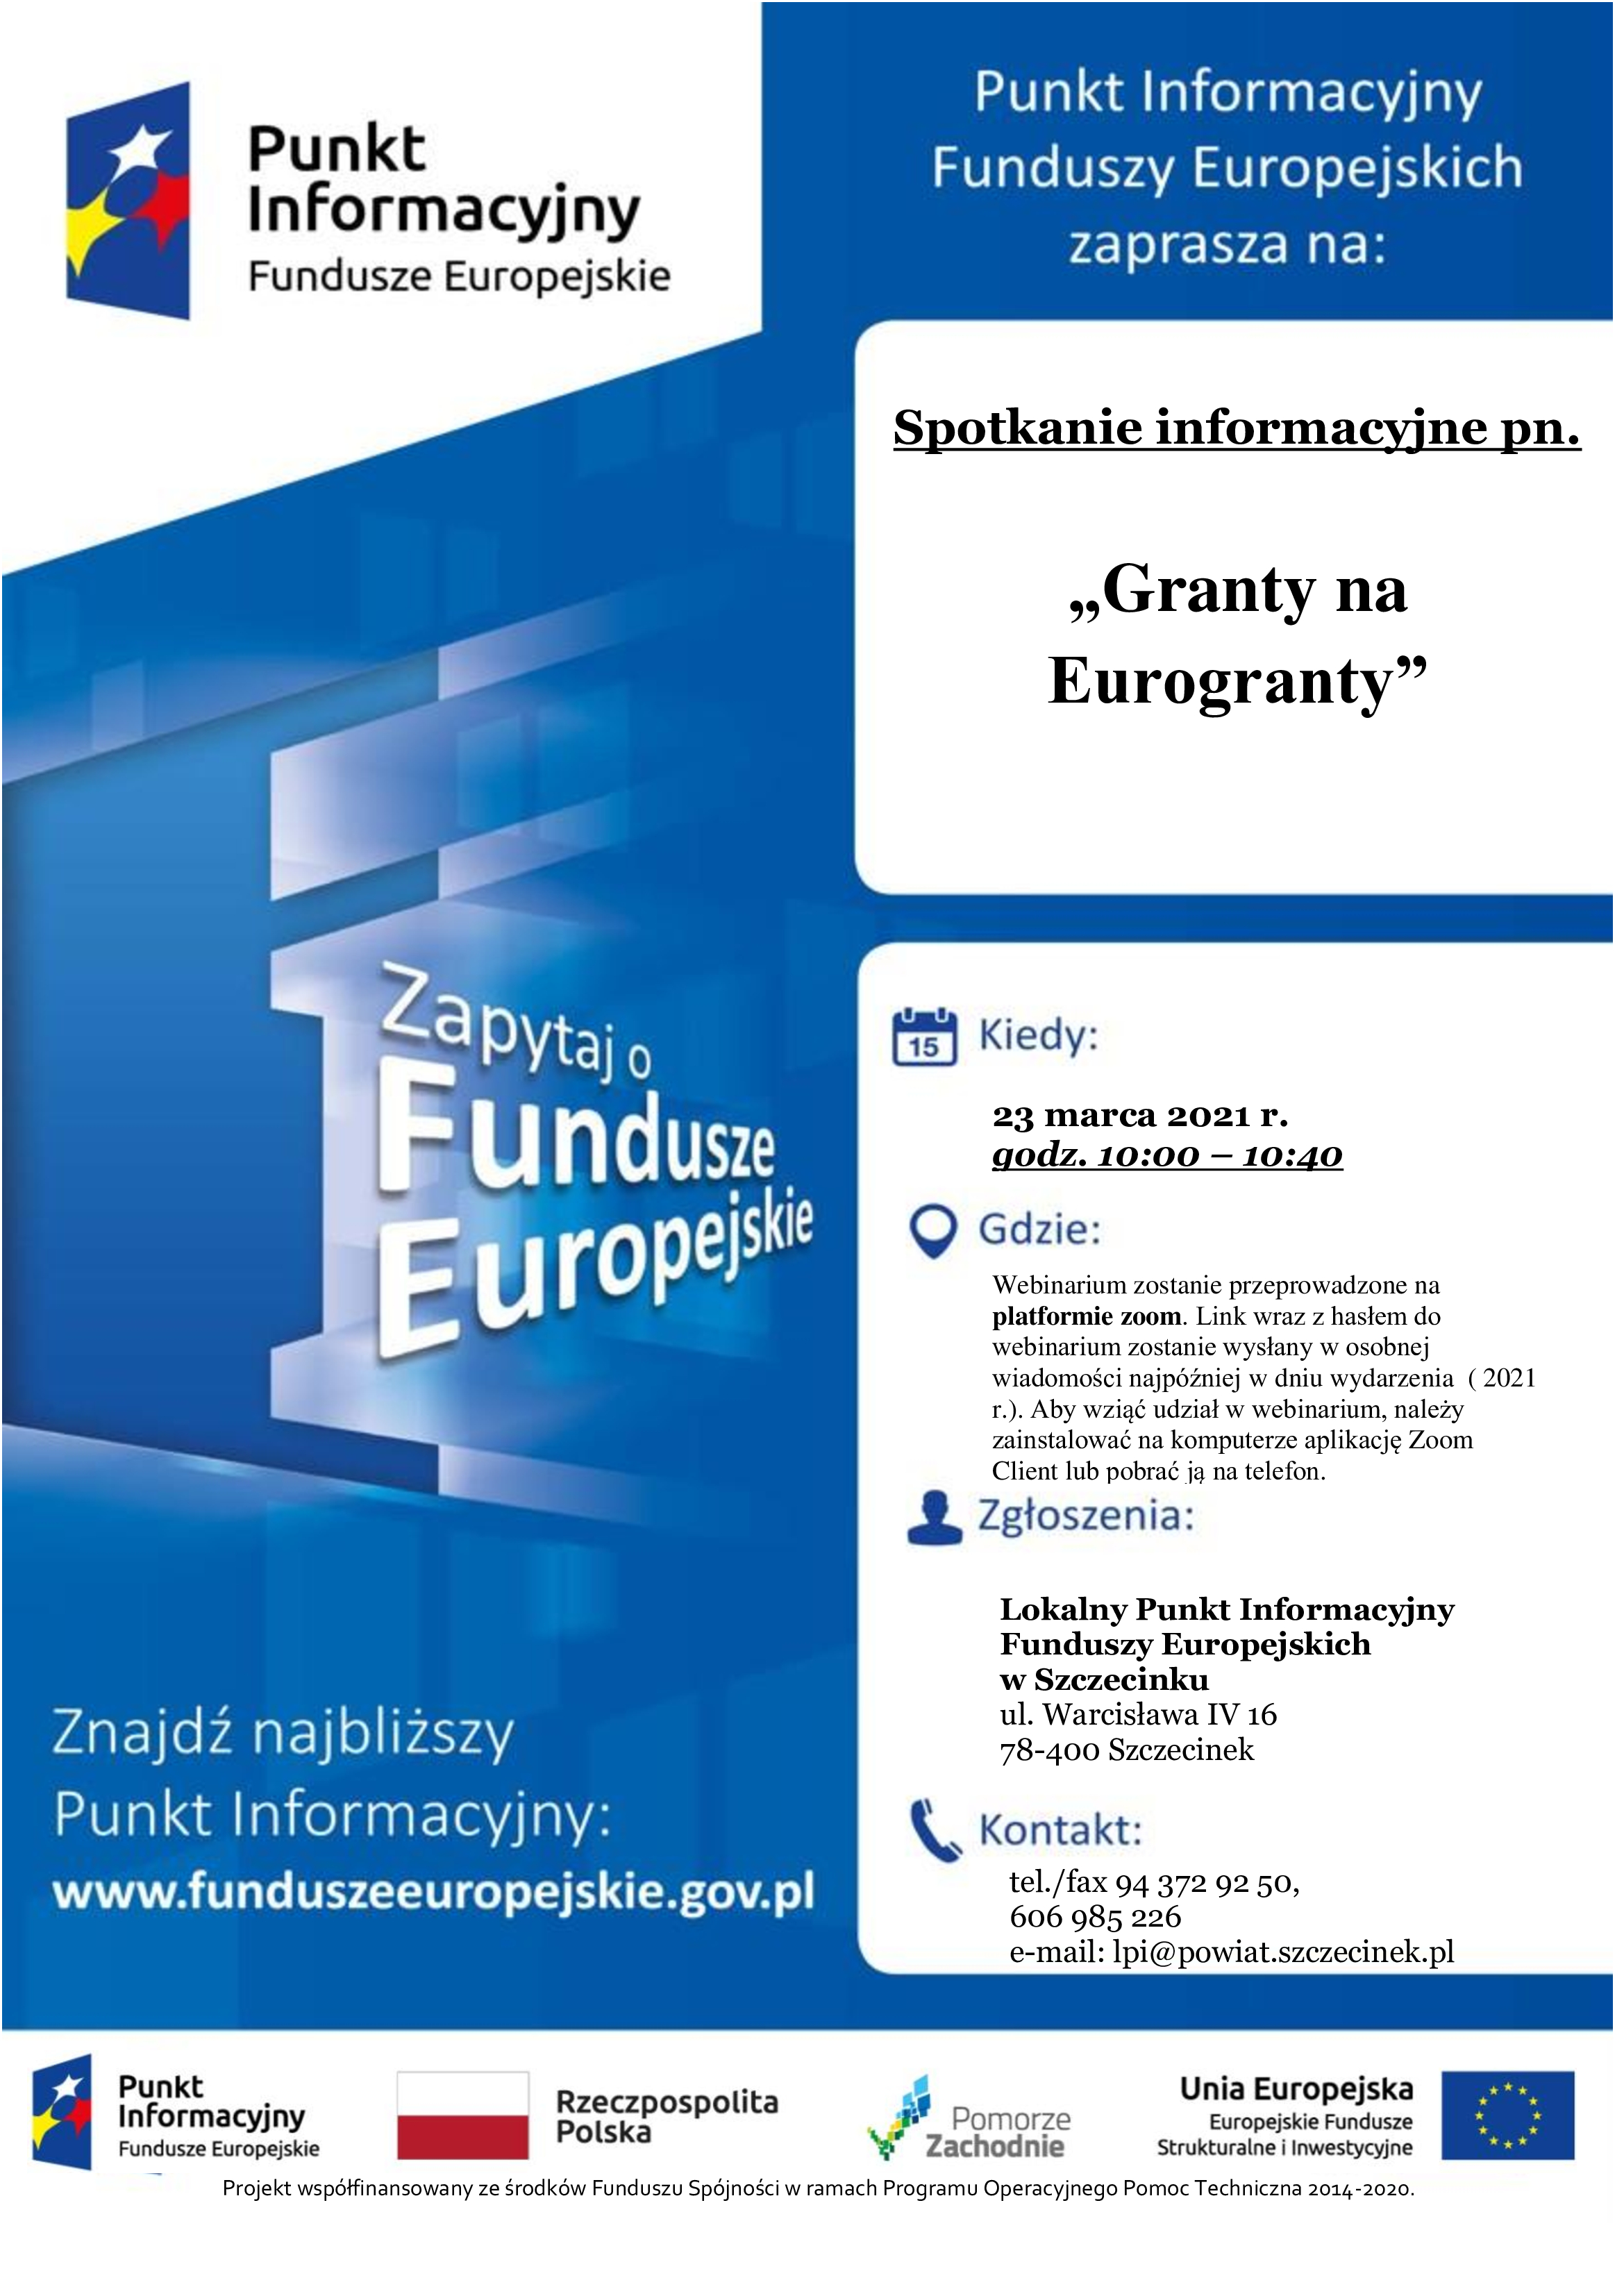 Zaproszenie do udziału w webinarium pn.” „Granty na Eurogranty”